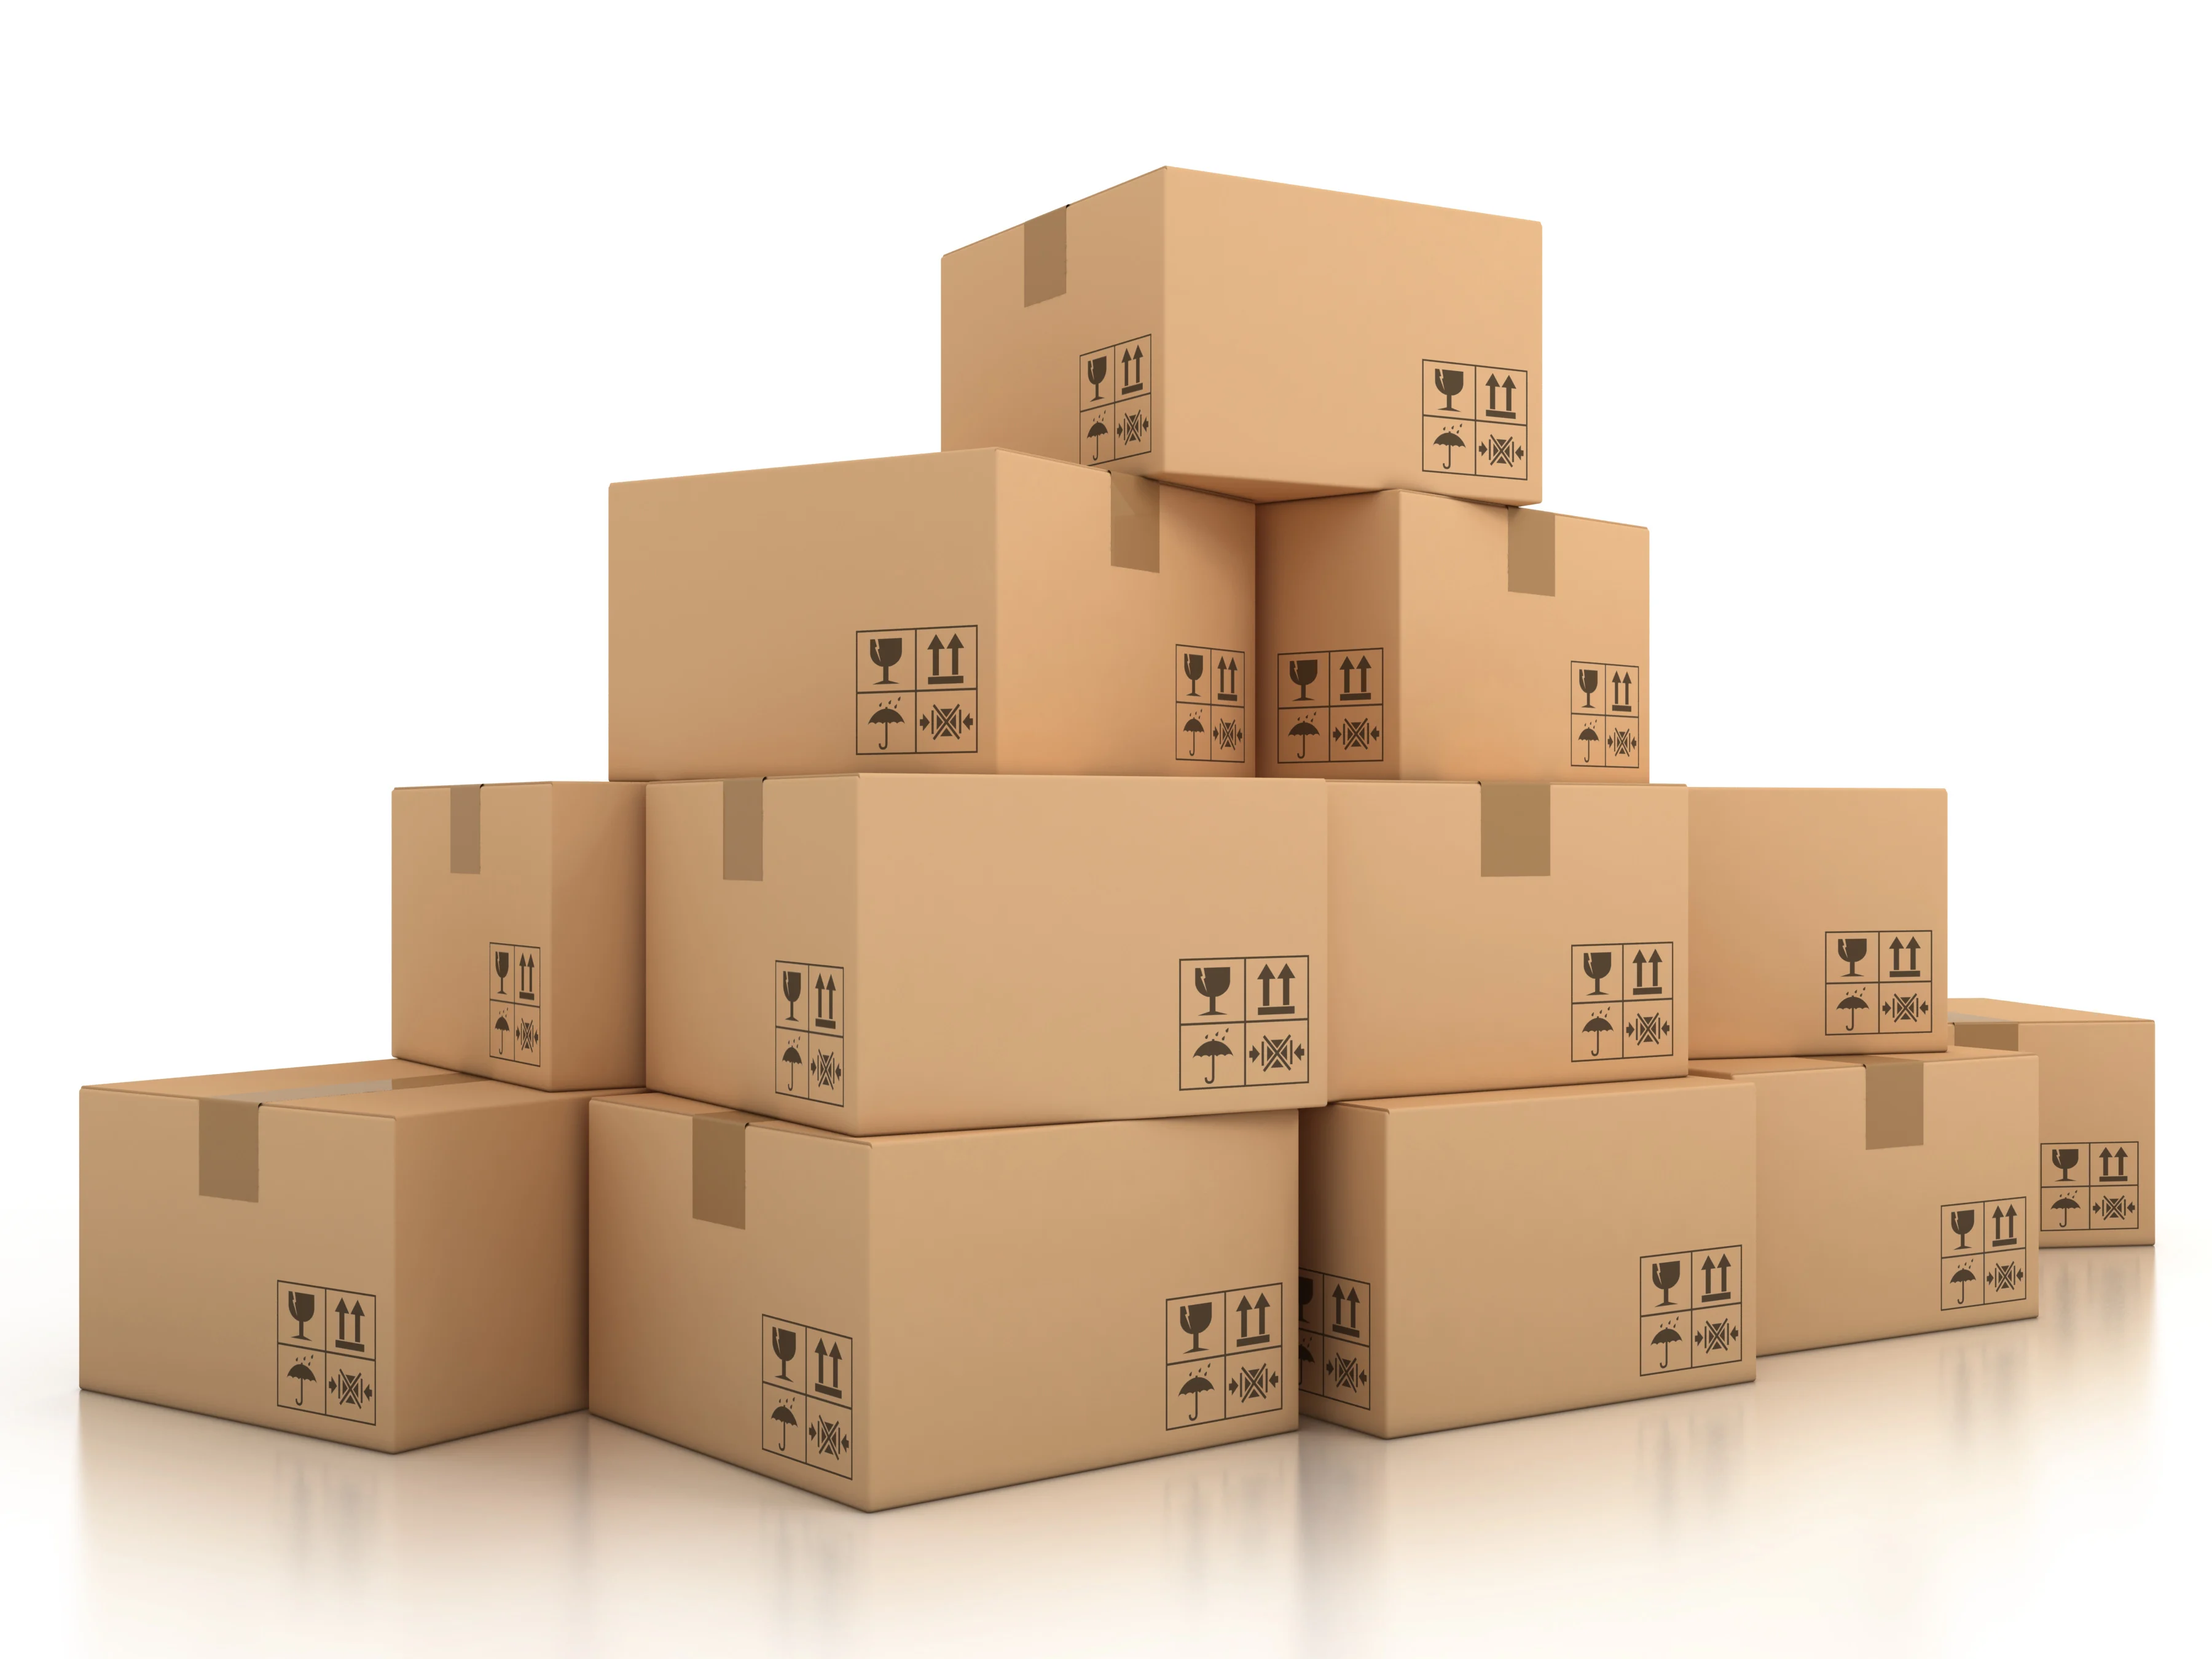 Package distribution. Коробки. Коробки с товаром. Картонная коробка. Коробки на складе.